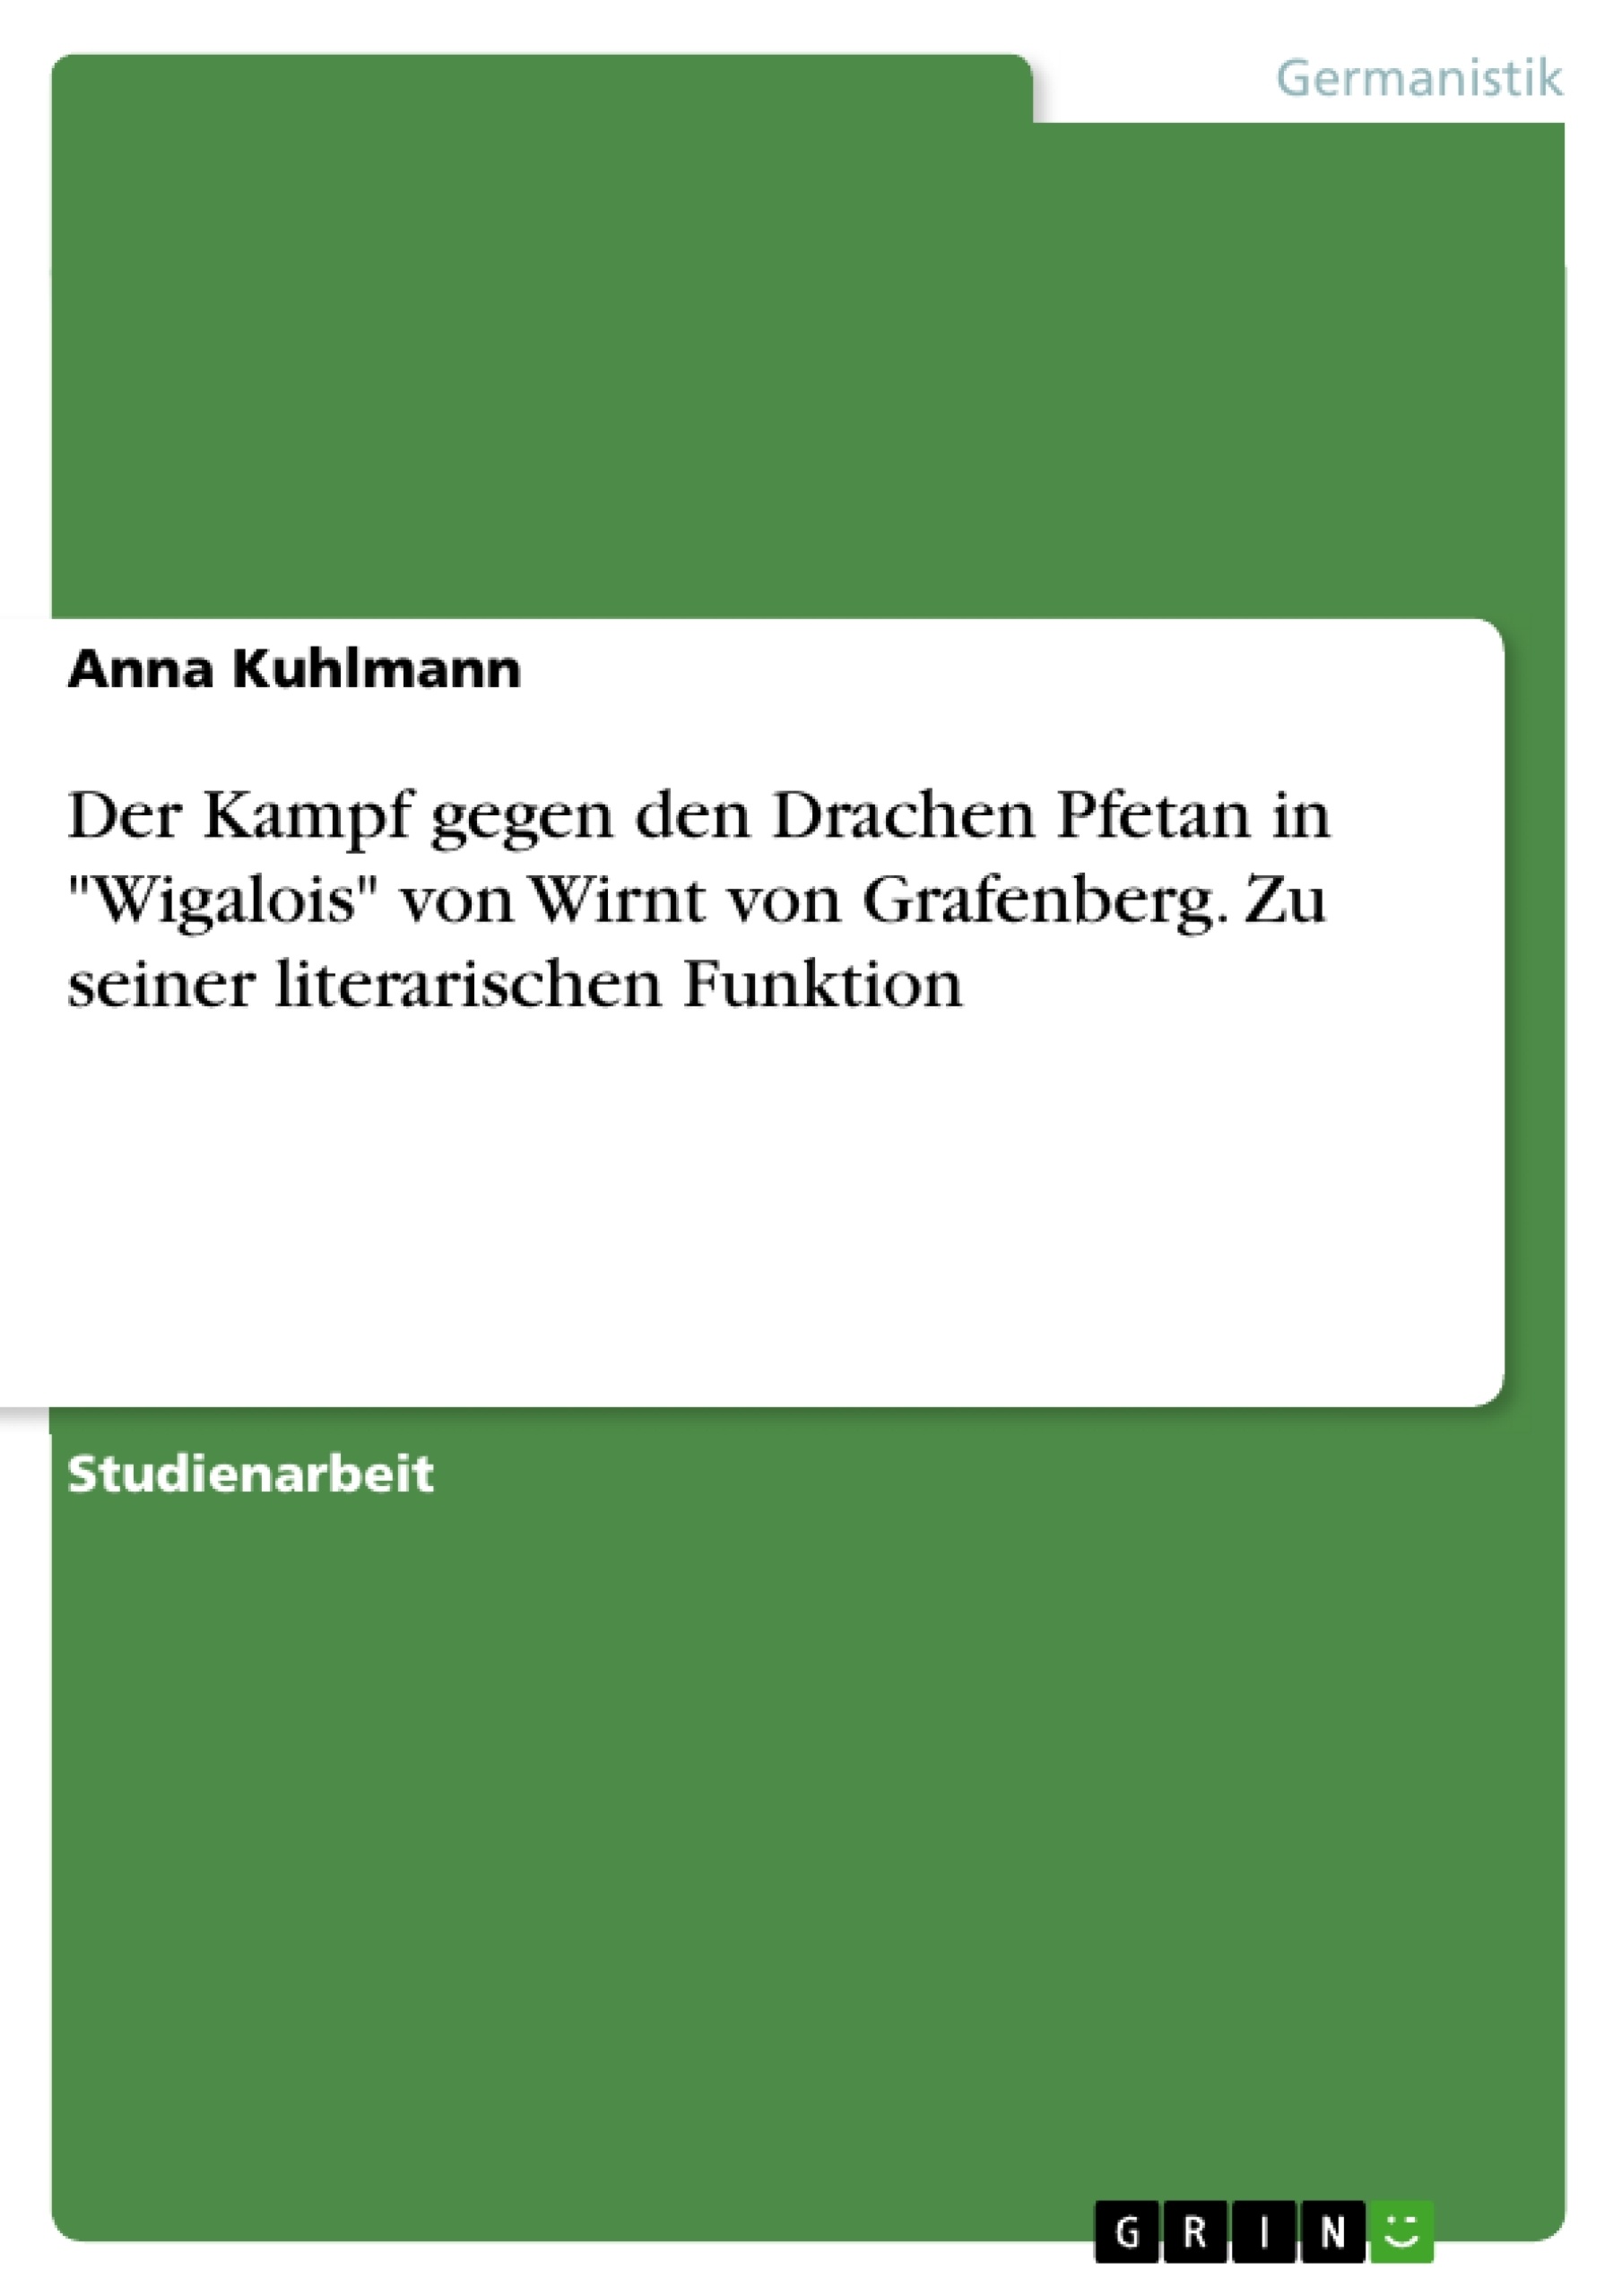 Title: Der Kampf gegen den Drachen Pfetan in "Wigalois" von Wirnt von Grafenberg. Zu seiner literarischen Funktion